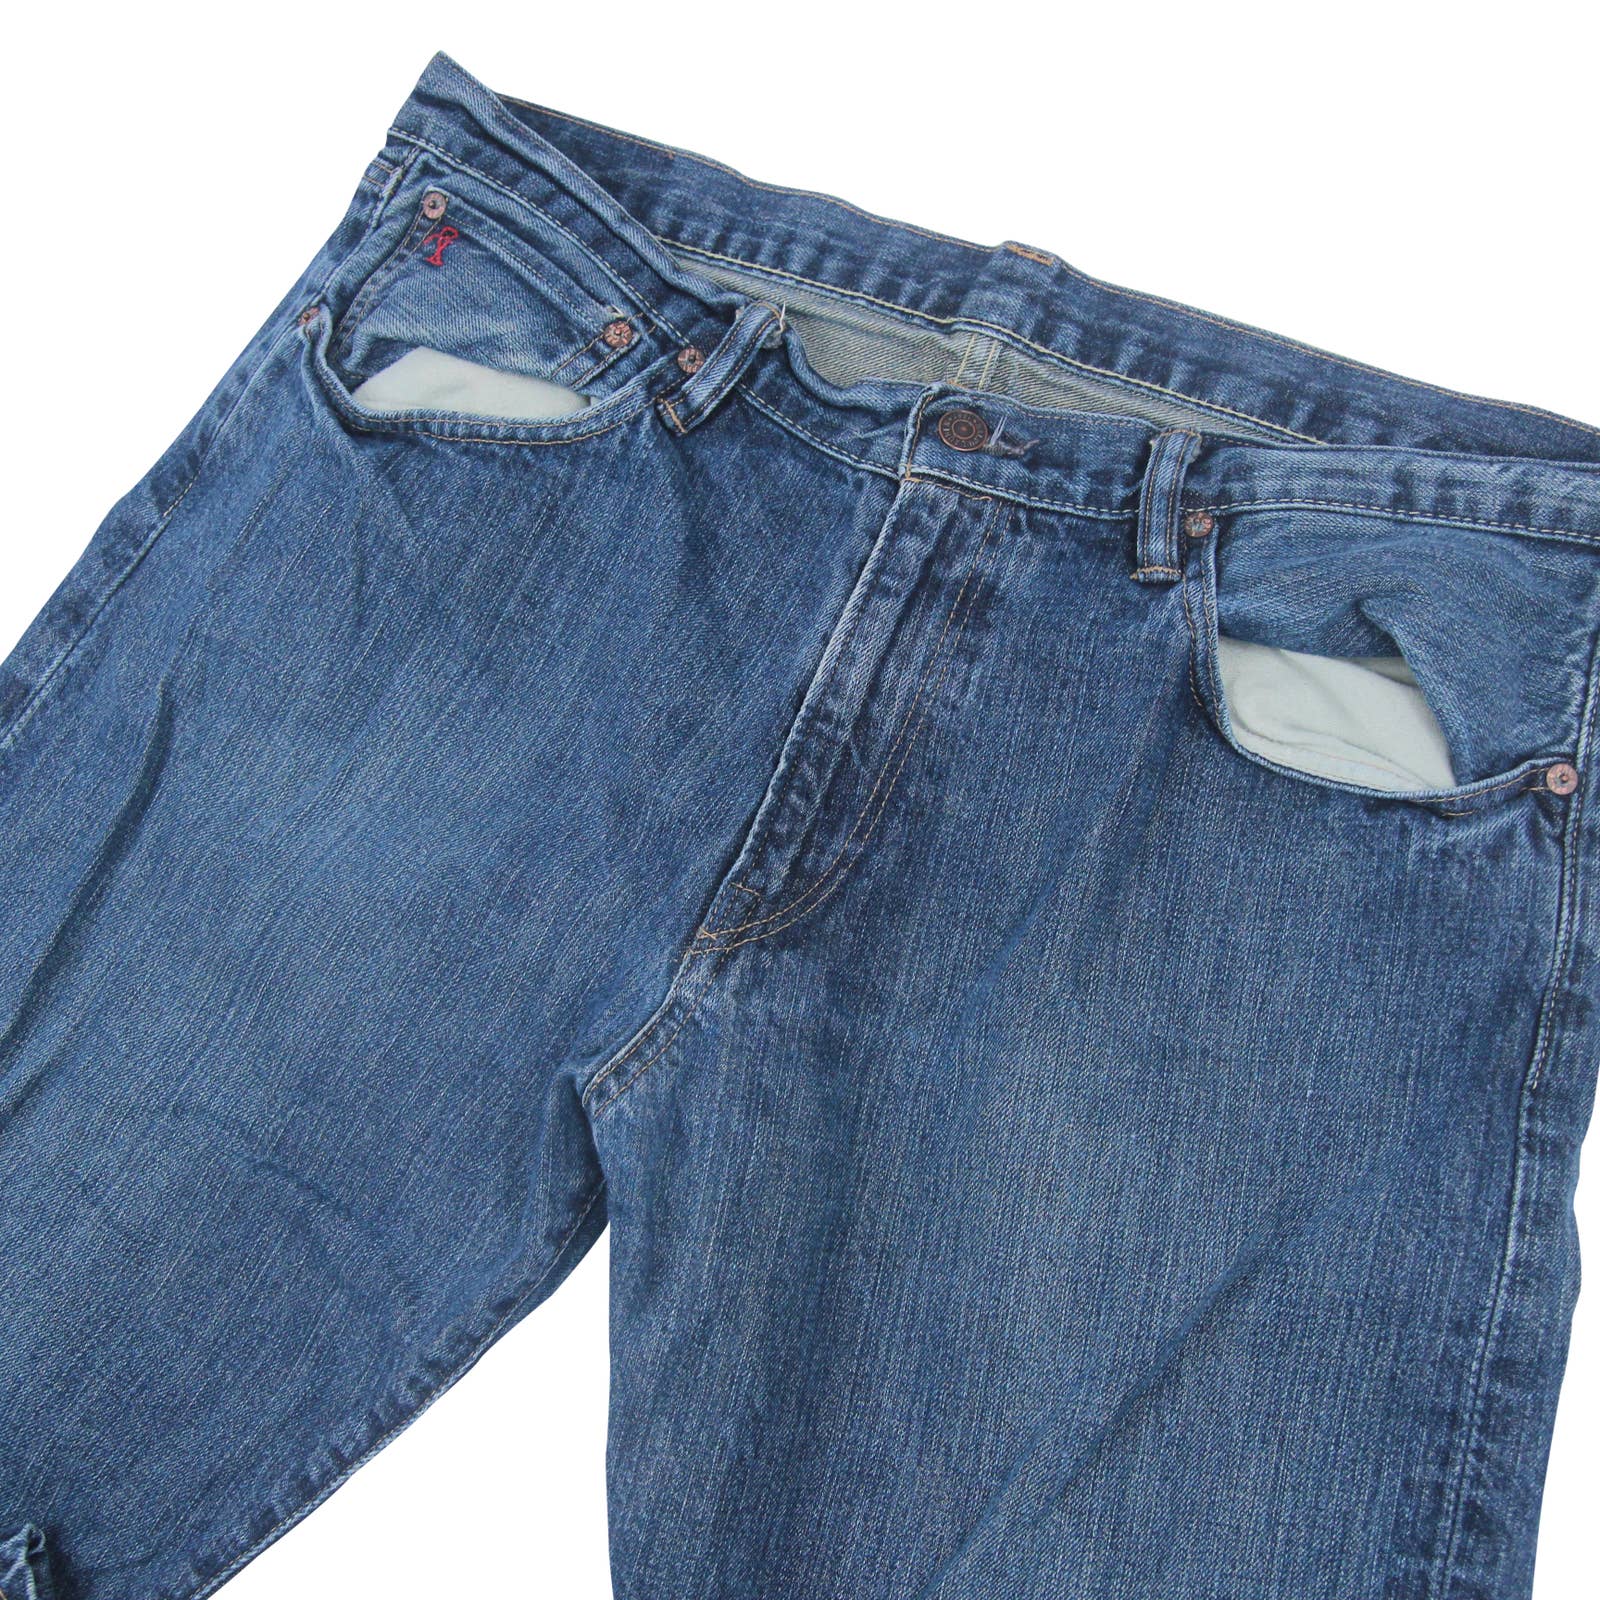 Polo Ralph Lauren 867 Classic Fit Denim Jeans - 36